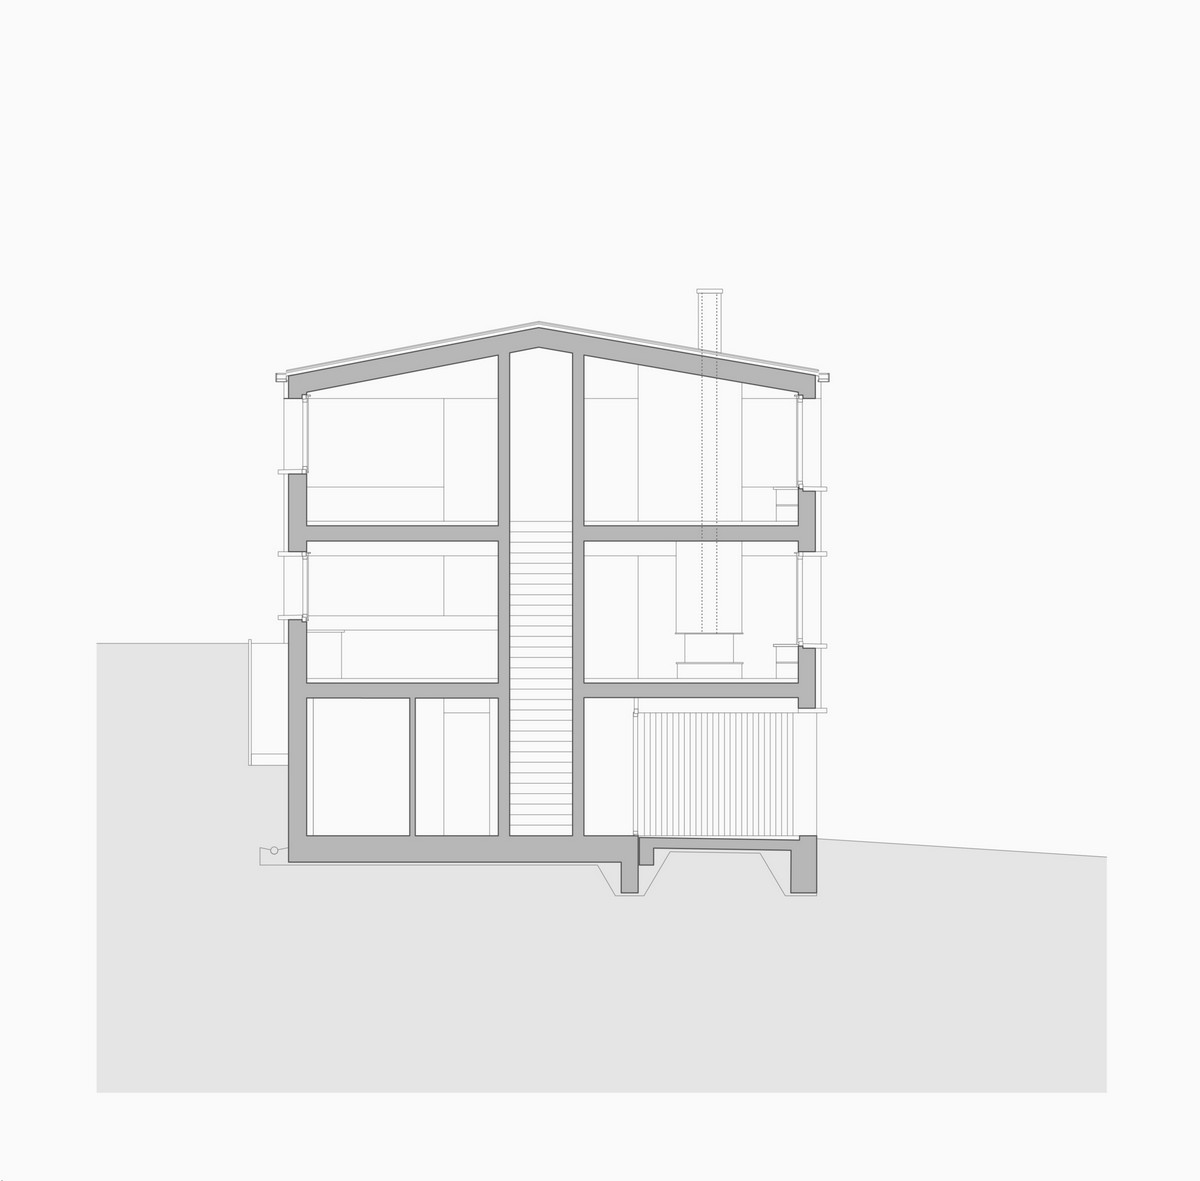 Минималистский трехэтажный дом в Швейцарии